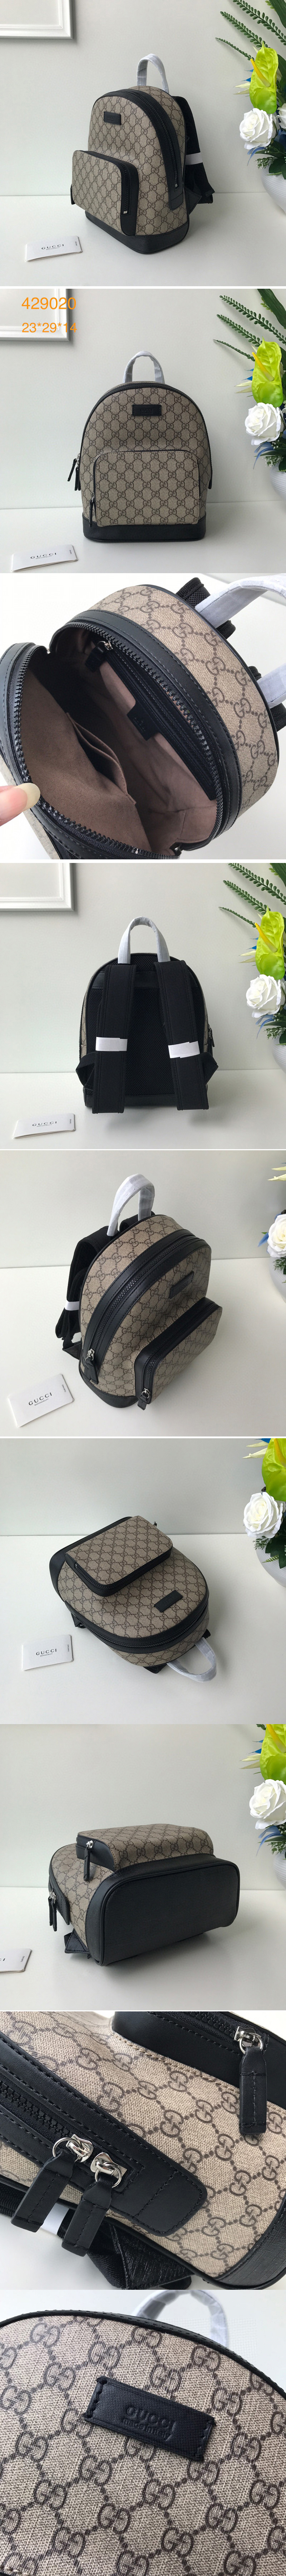 Replica Gucci 429020 Eden small backpack Beige/ebony GG Supreme canvas